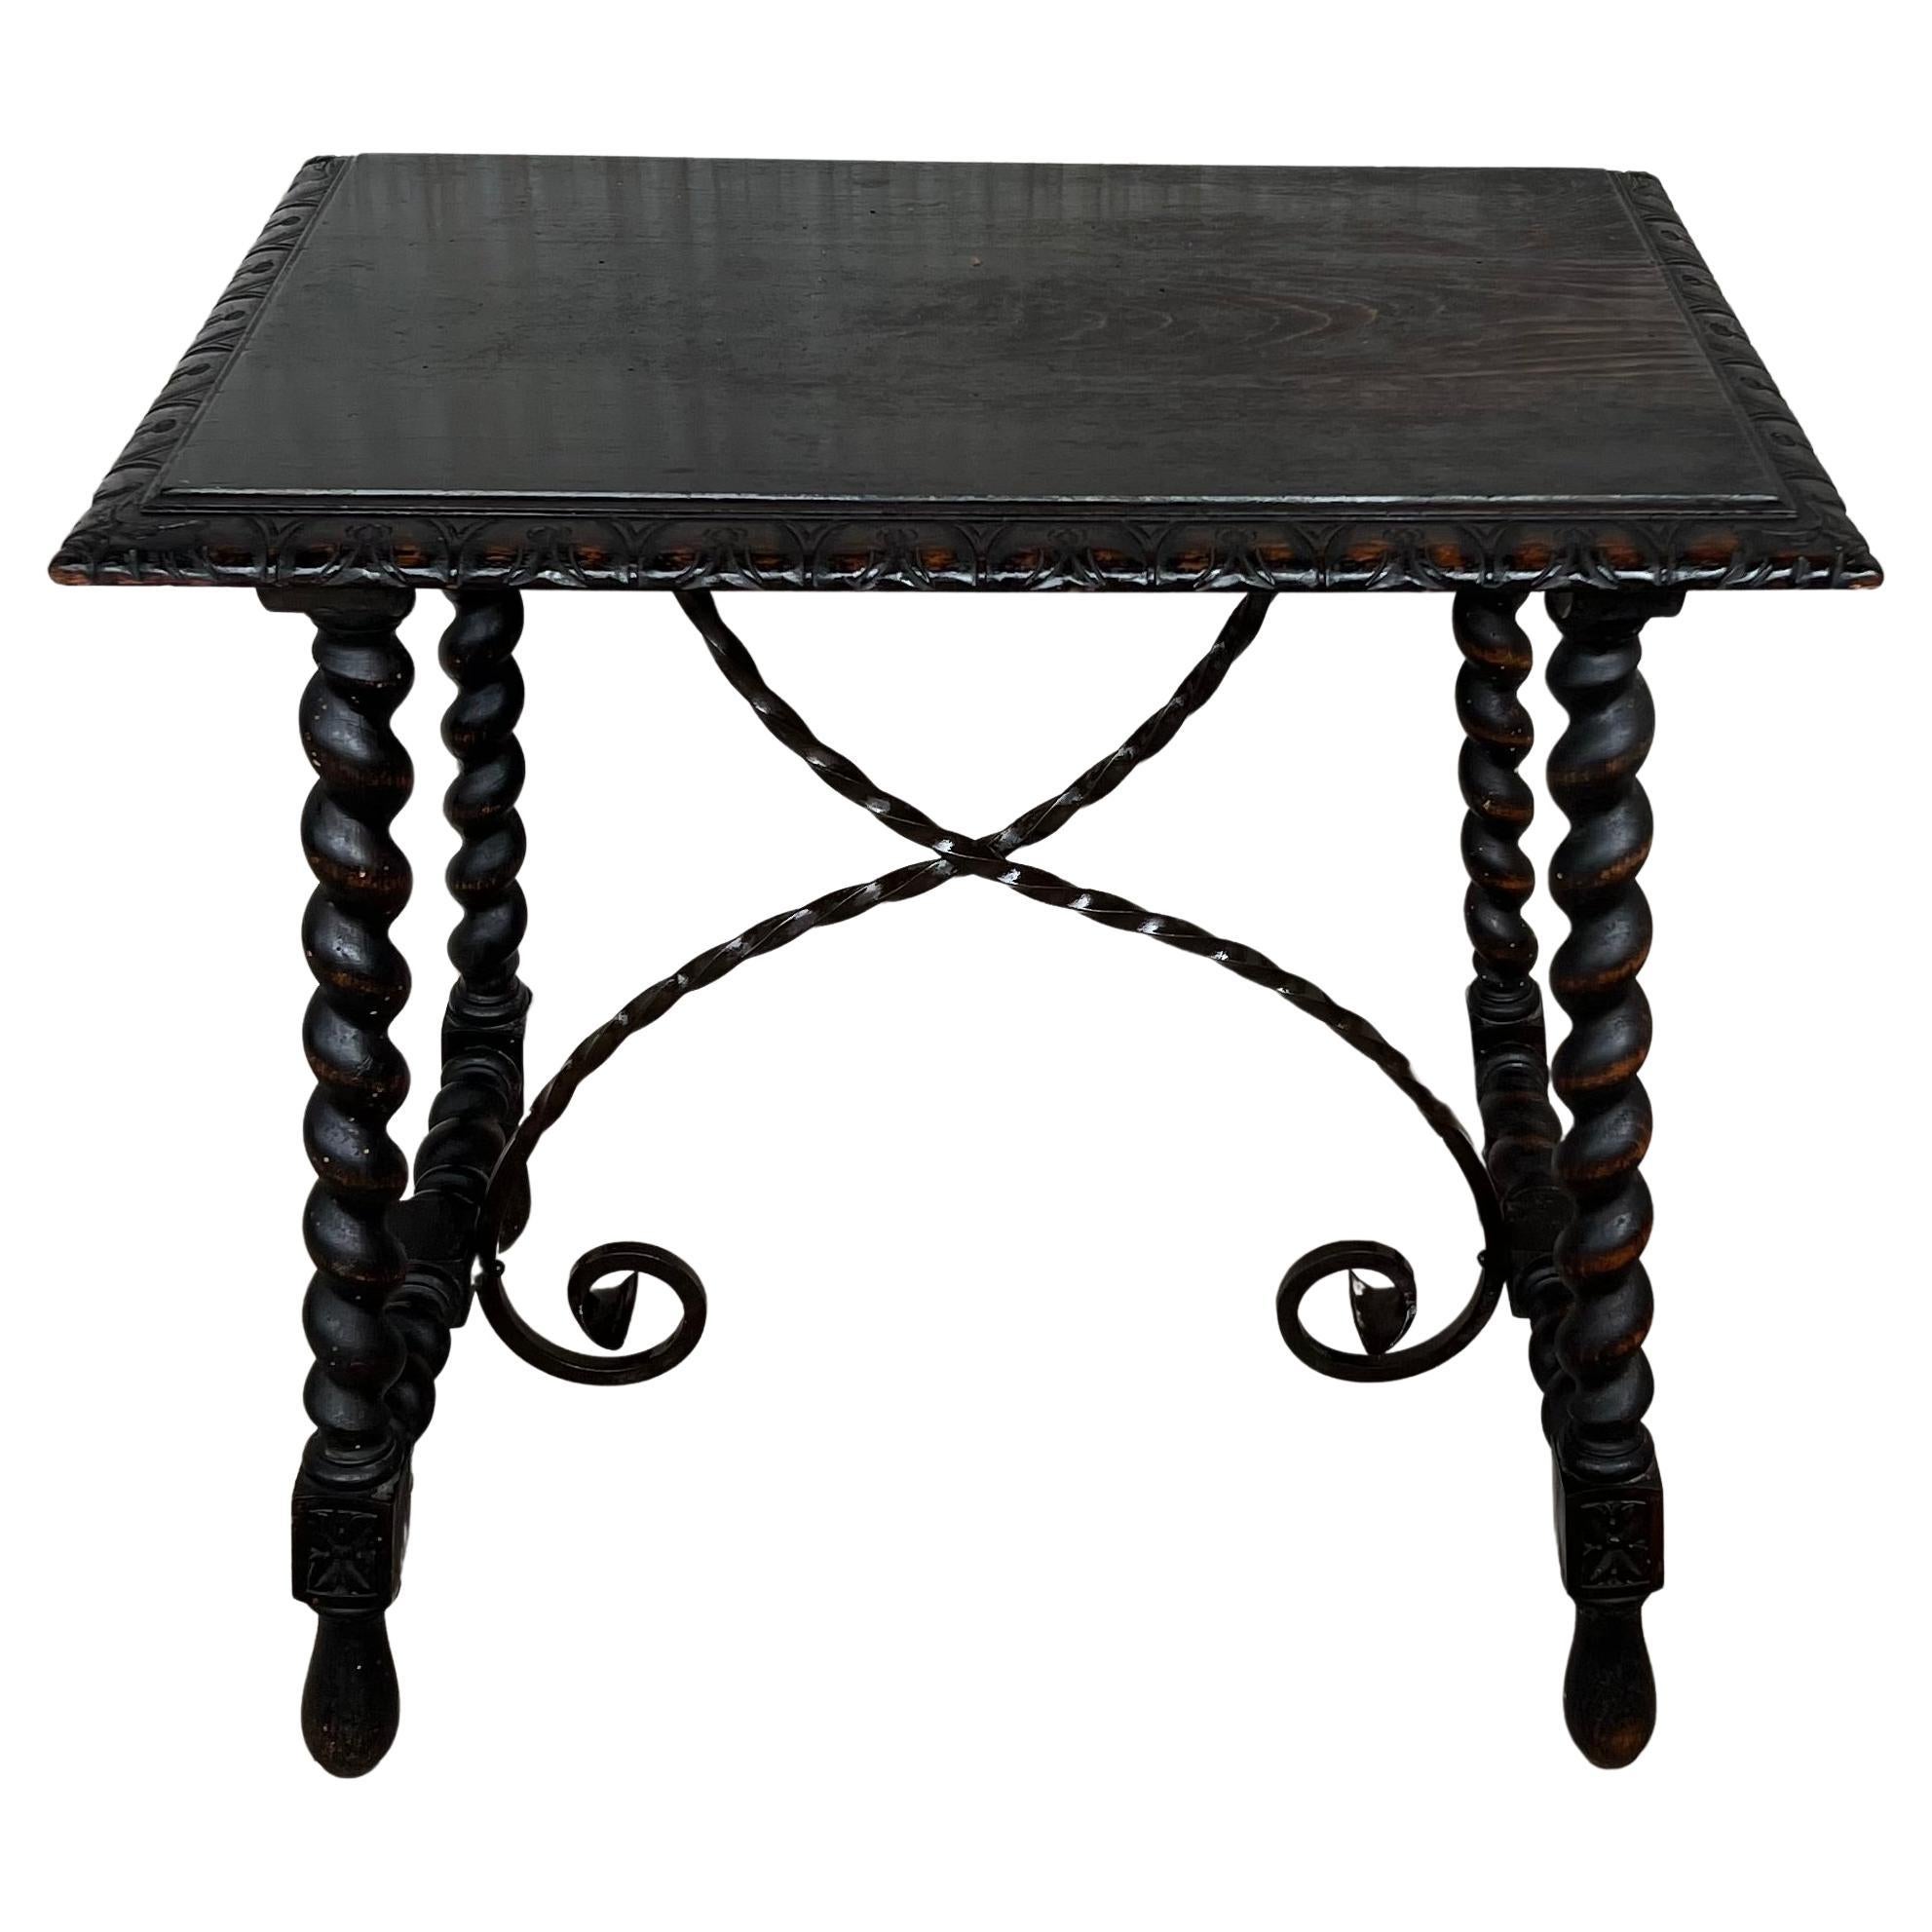 Table d'appoint ou table basse espagnole du 19ème siècle avec brancard en fer et pieds Solomoniques